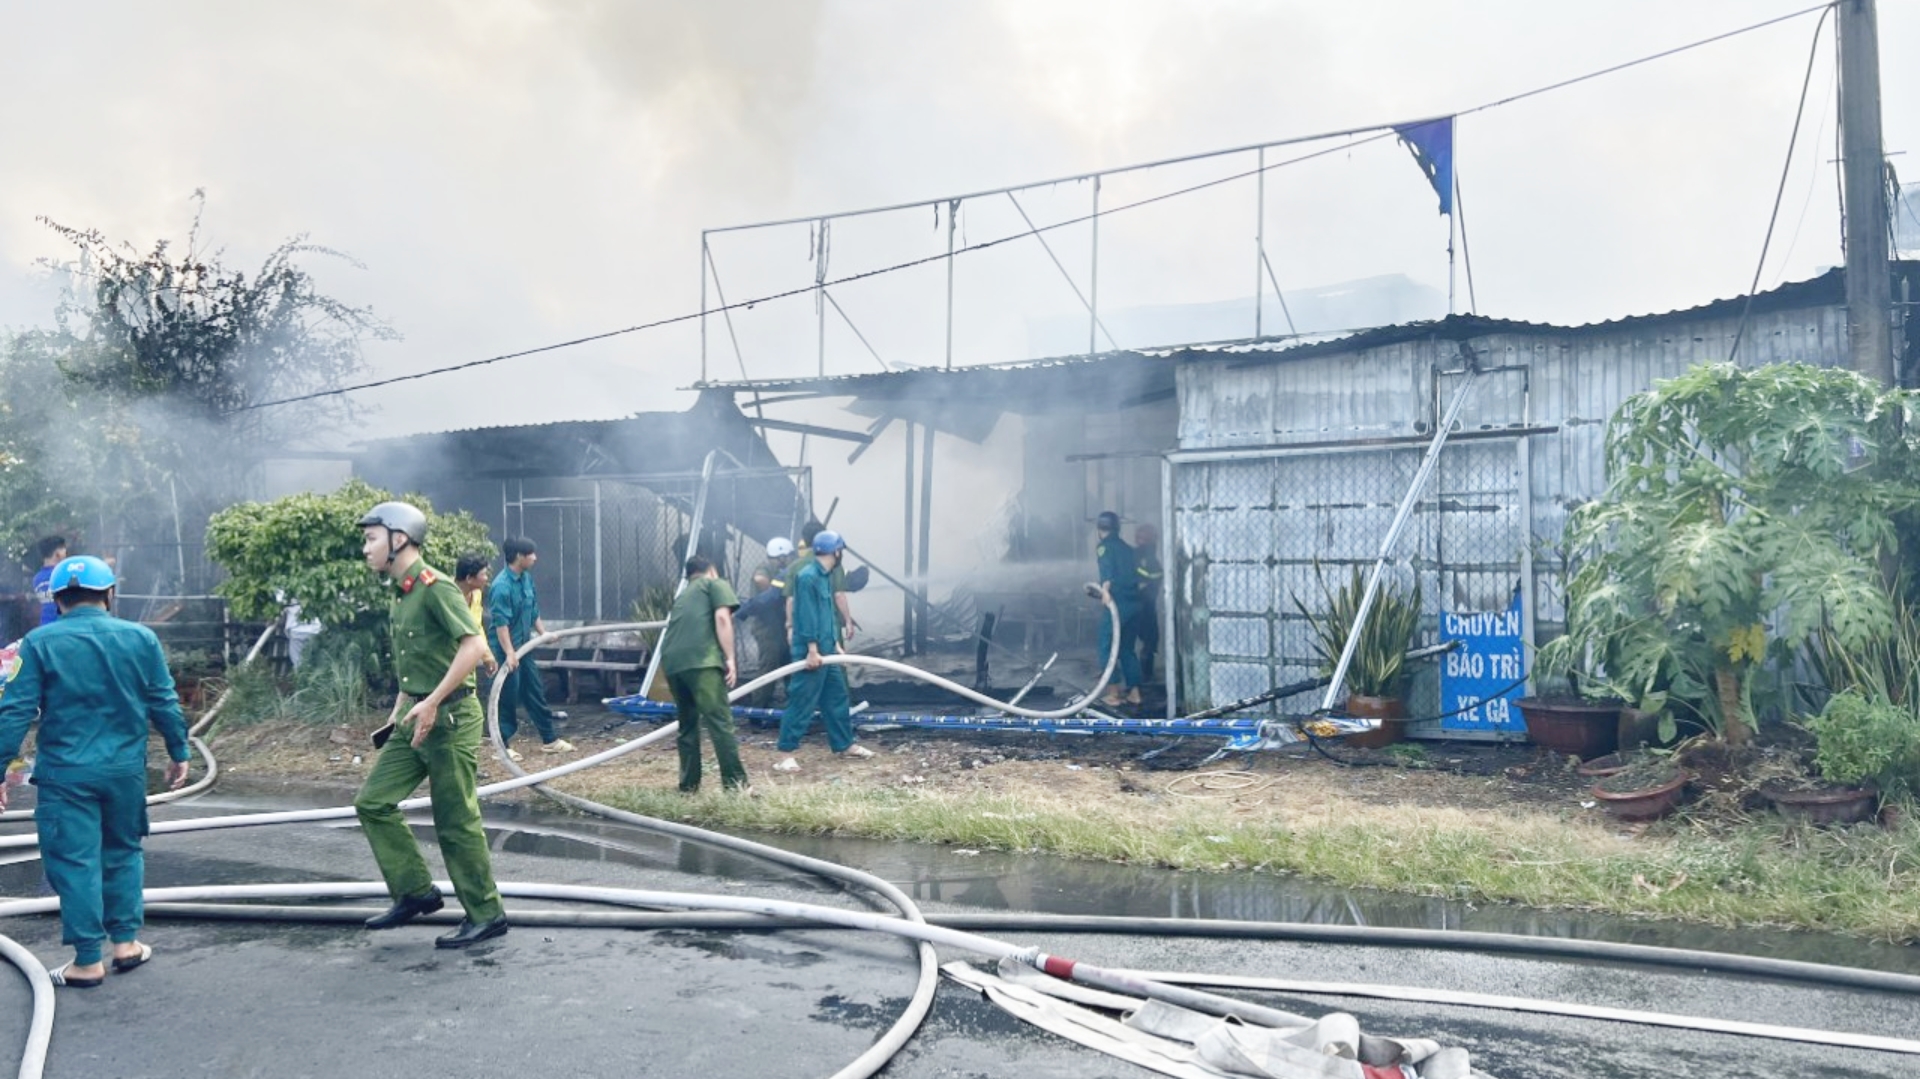 Sáu căn nhà ở An Giang bị cháy rụi trong ngày 1/4- Ảnh 1.